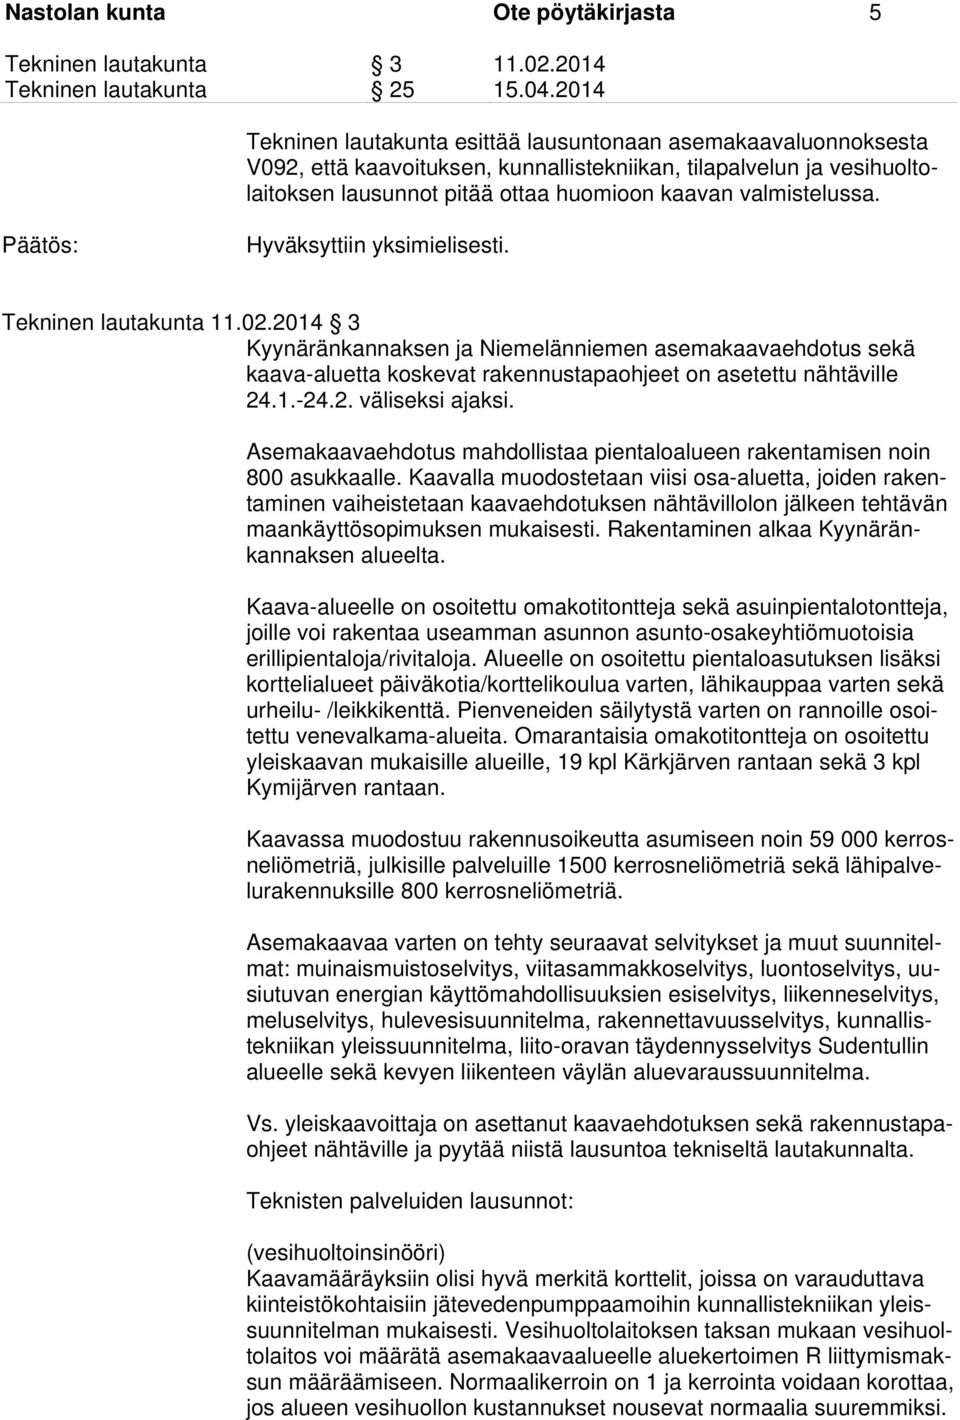 2014 3 Kyynäränkannaksen ja Niemelänniemen asemakaavaehdotus sekä kaava-aluetta koskevat rakennustapaohjeet on asetettu nähtäville 24.1.-24.2. väliseksi ajaksi.